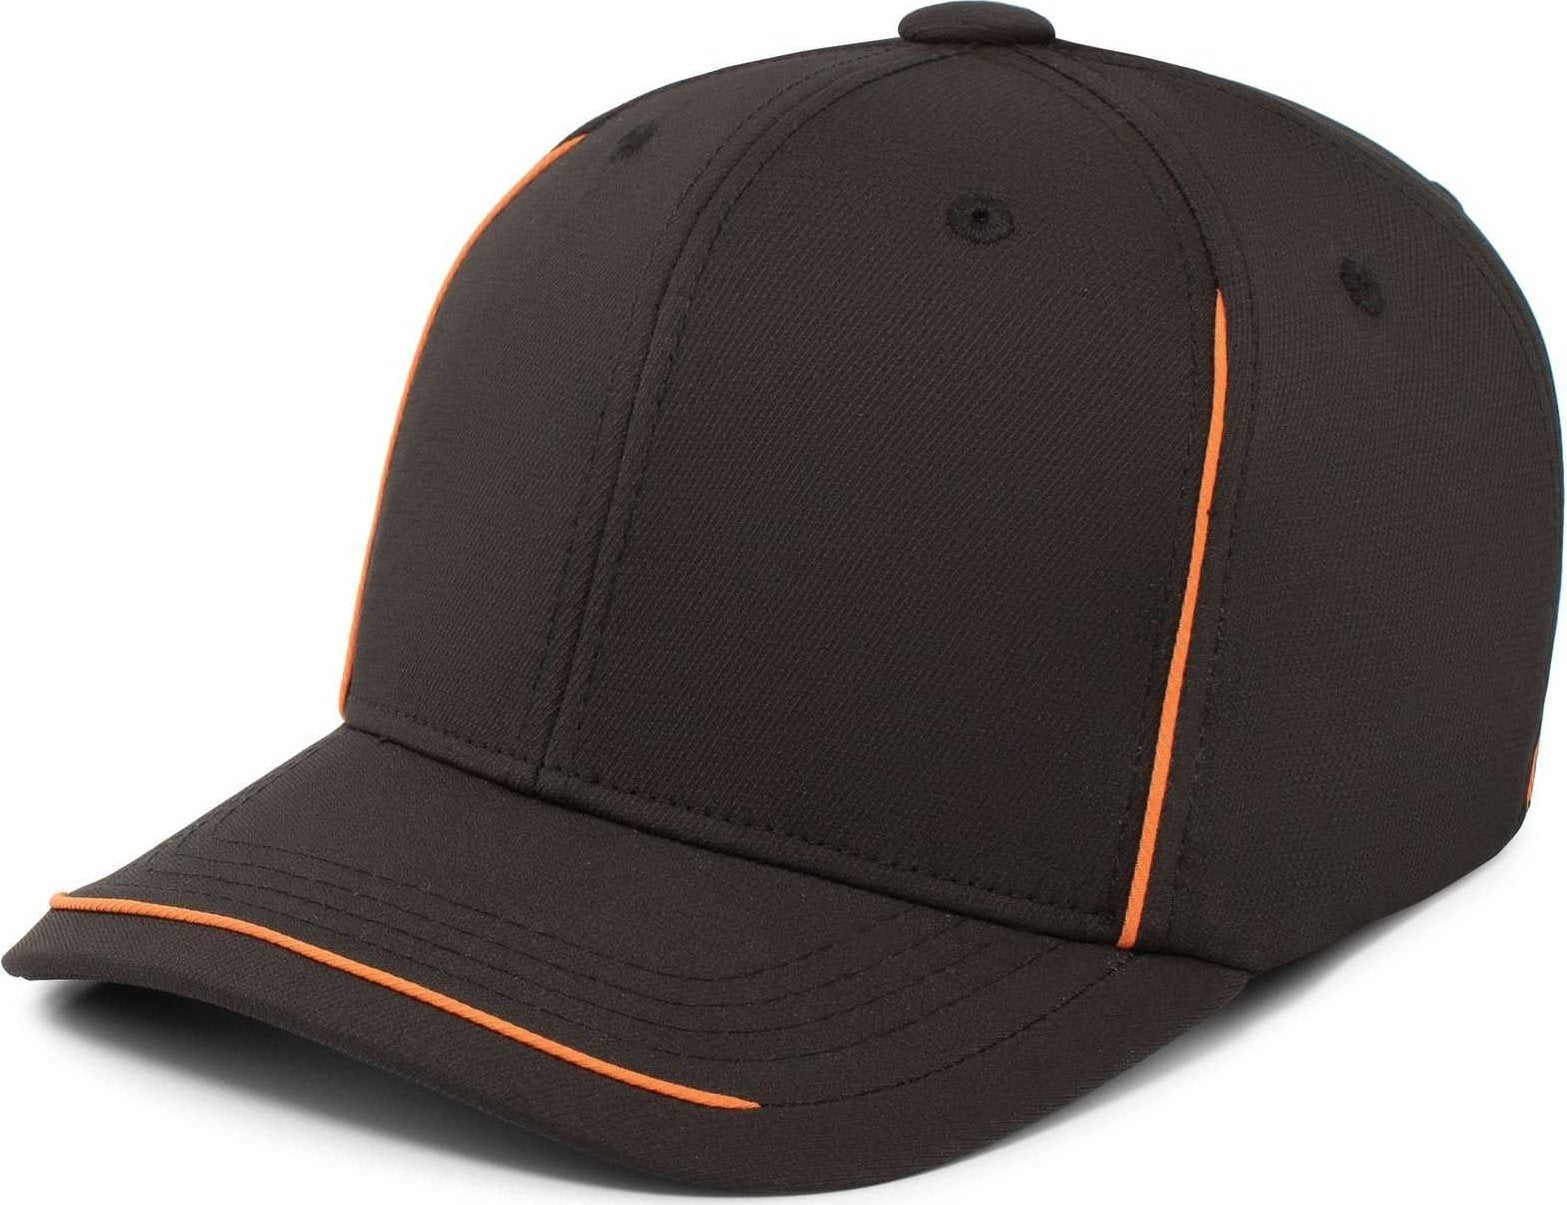 Pacific Headwear P304 Legend Cap - Black Orange - HIT a Double